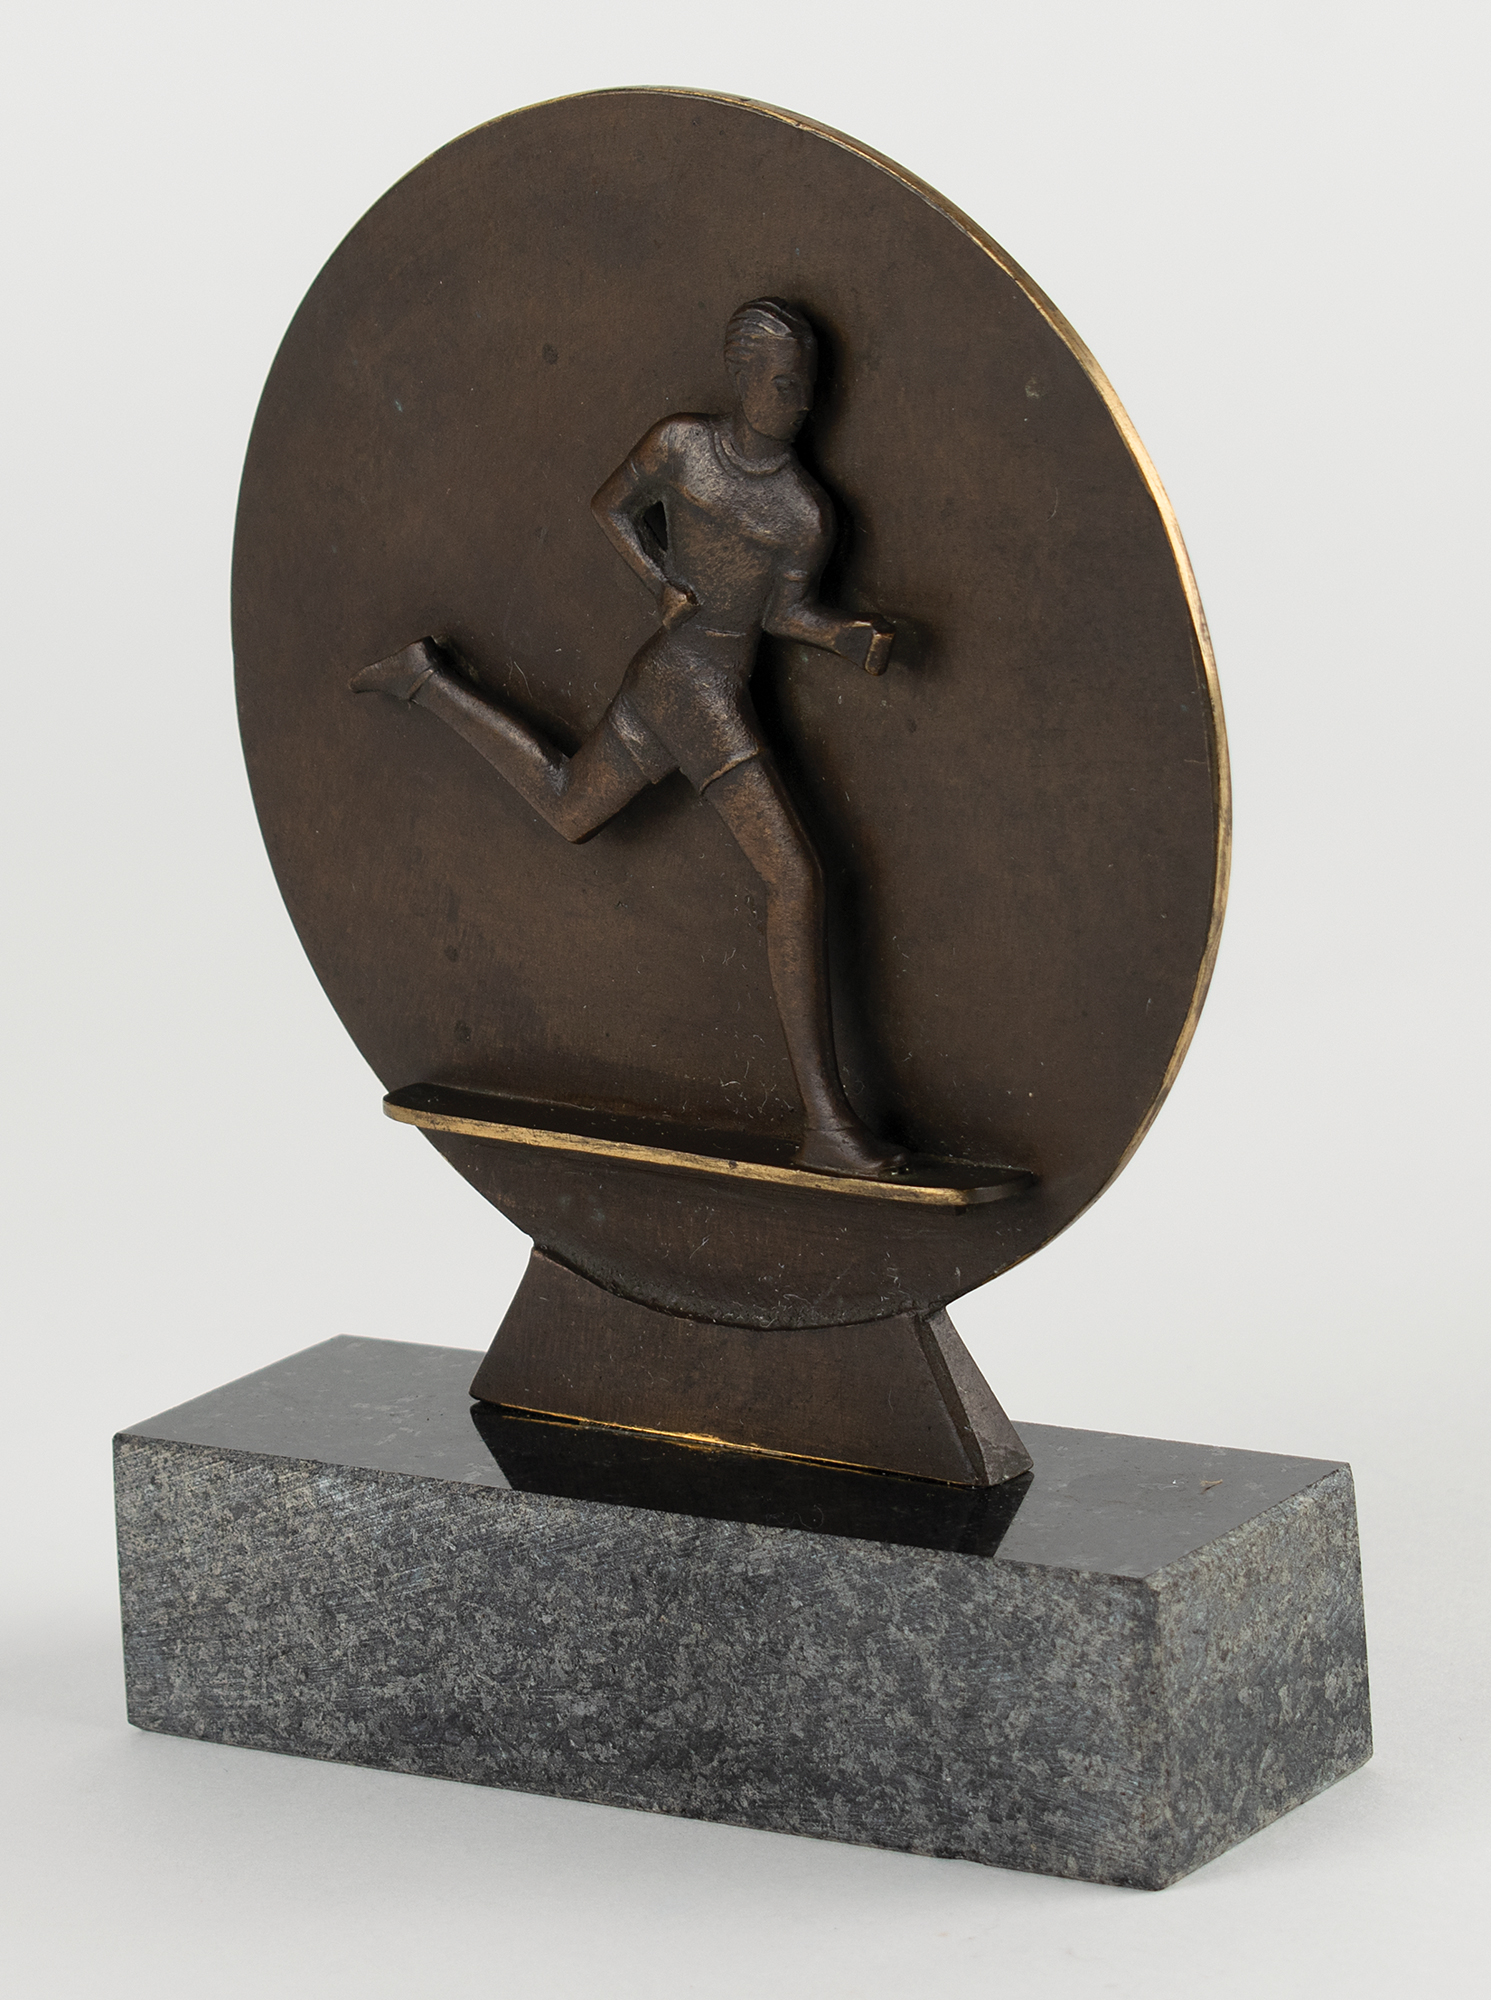 Lot #4262 Berlin 1936 Summer Olympics Running Statue